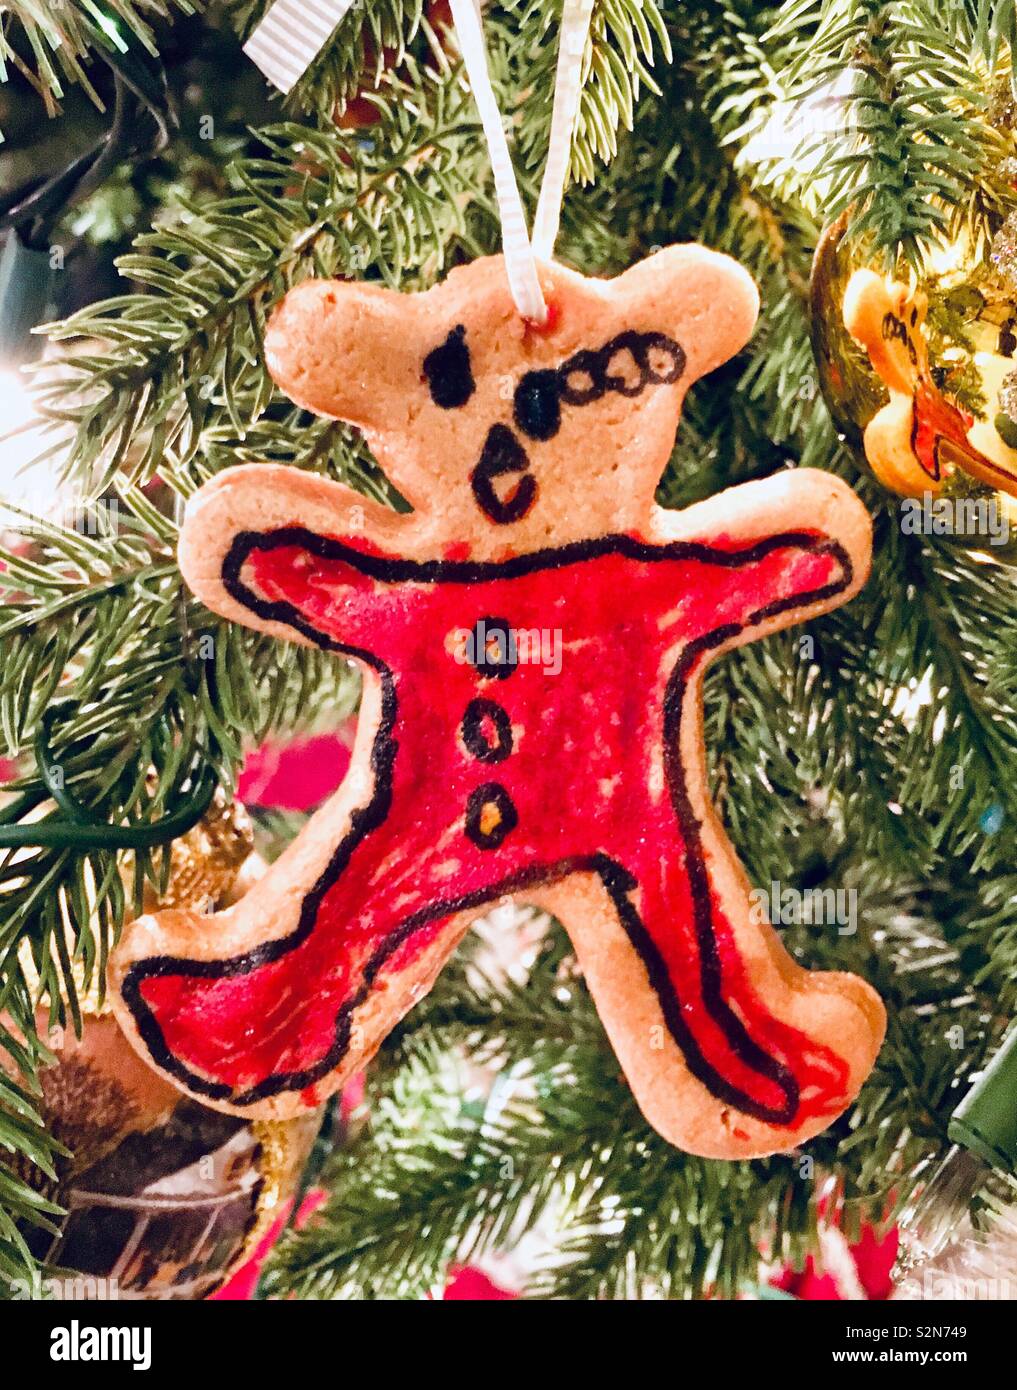 Navidad caseras Teddy bear en pijama roja hecha de masa de galleta seca con color y marcador Sharpie dibujo desde niño pequeño árbol de Navidad Foto de stock